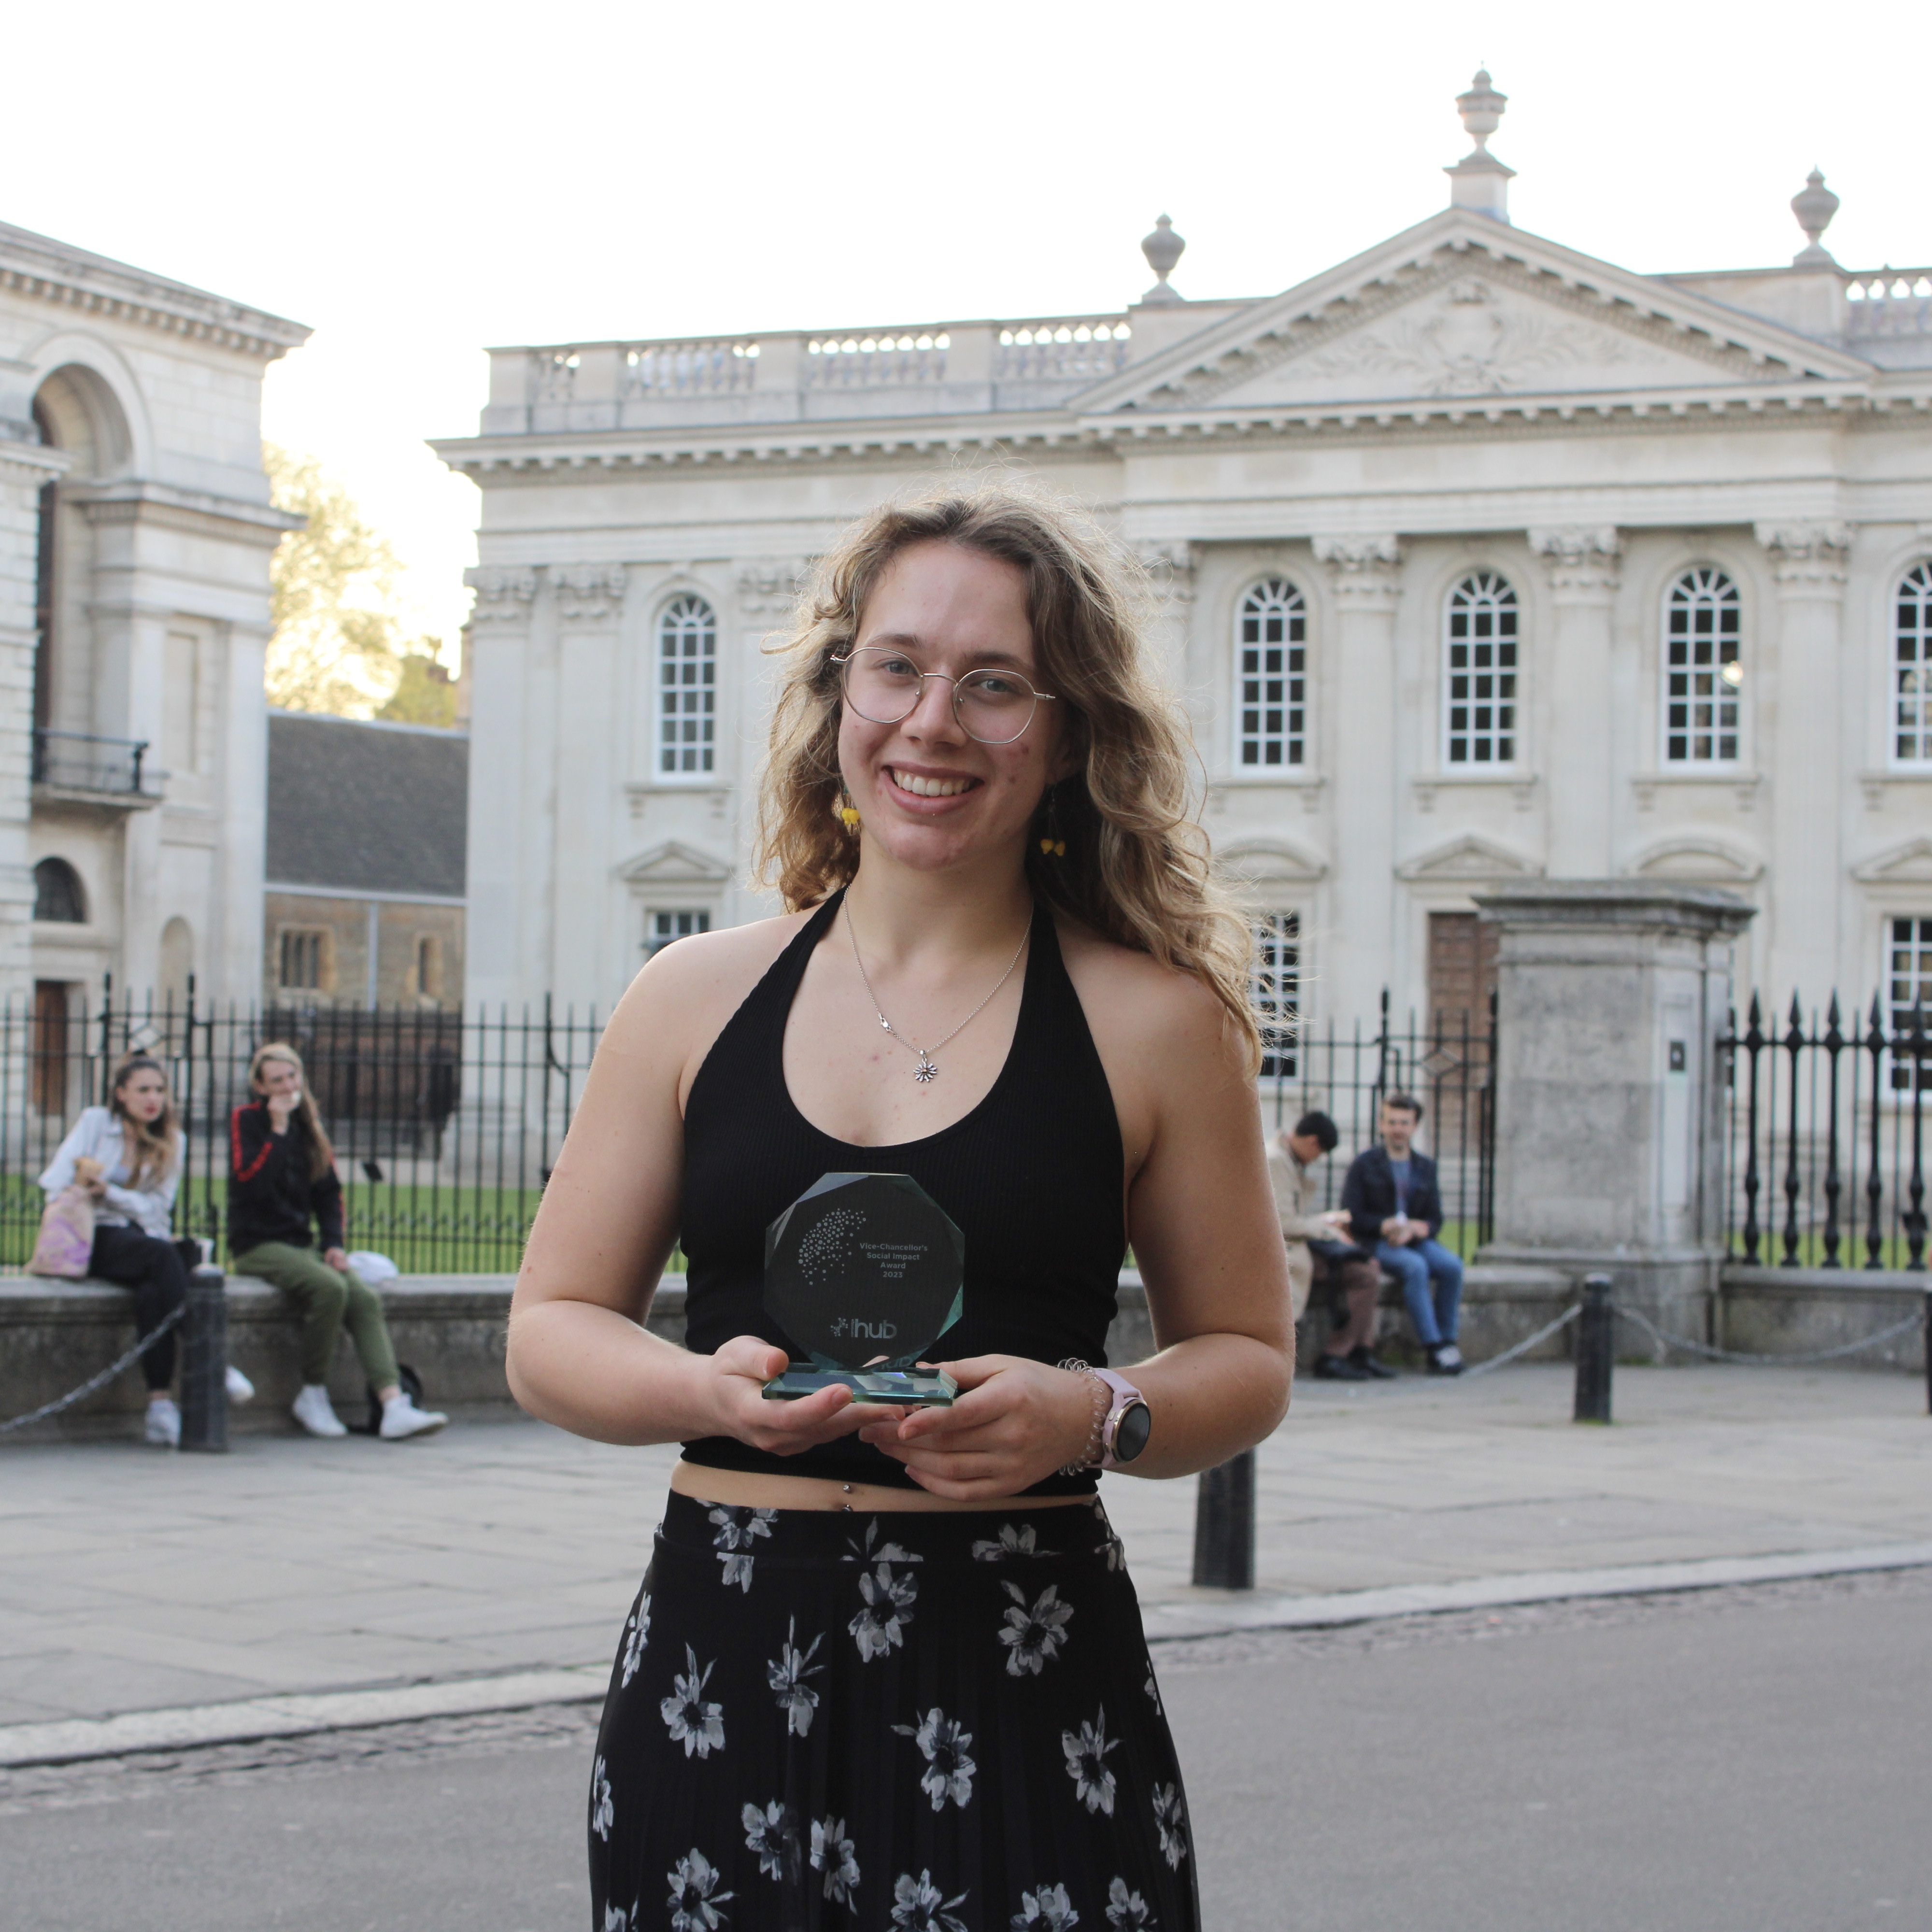 Imogen Arden-Jones with her award